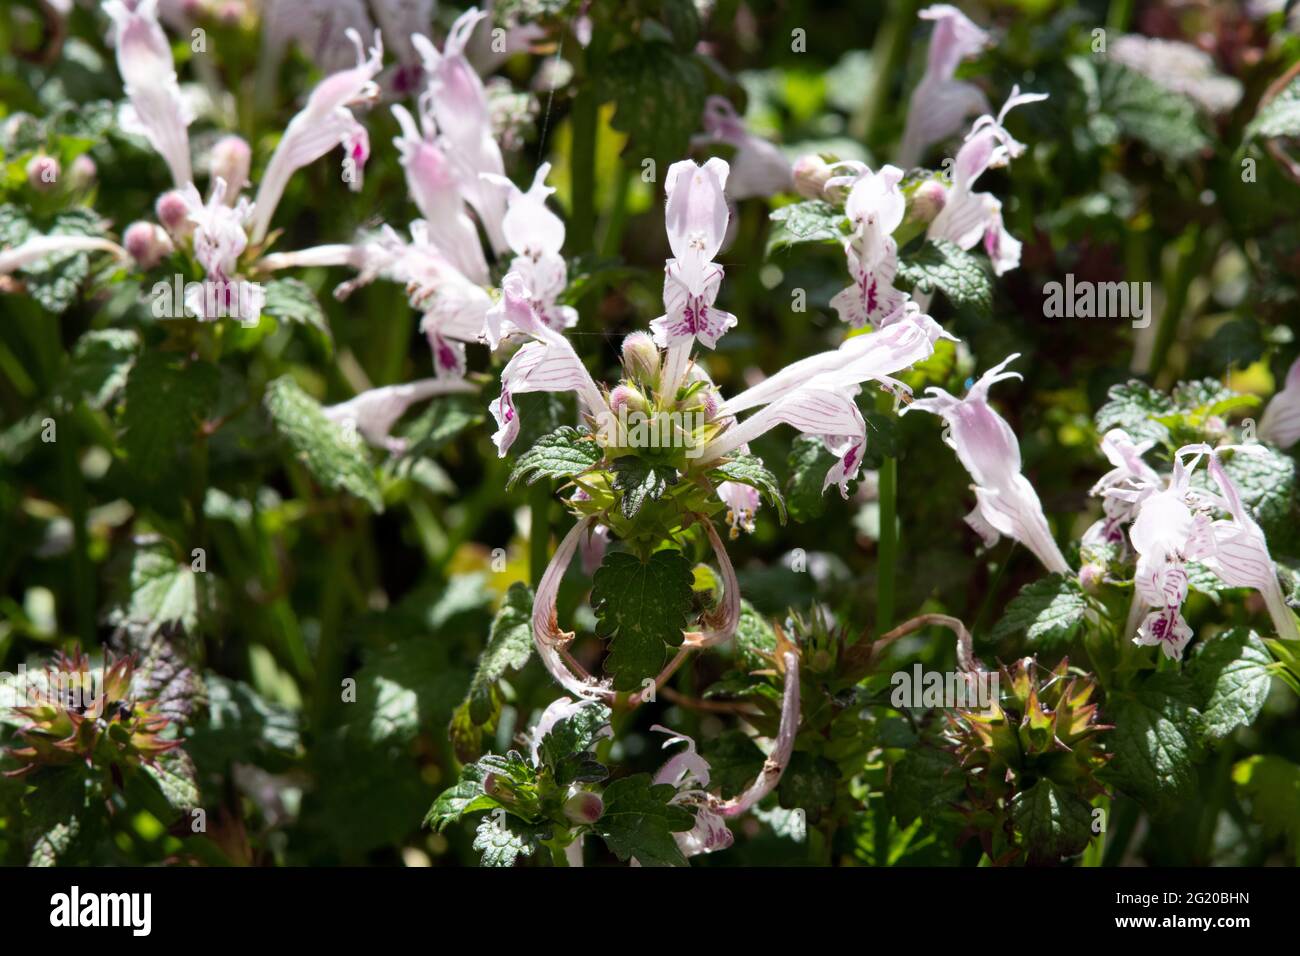 Lamium garganicum subsp. striatum Stock Photo